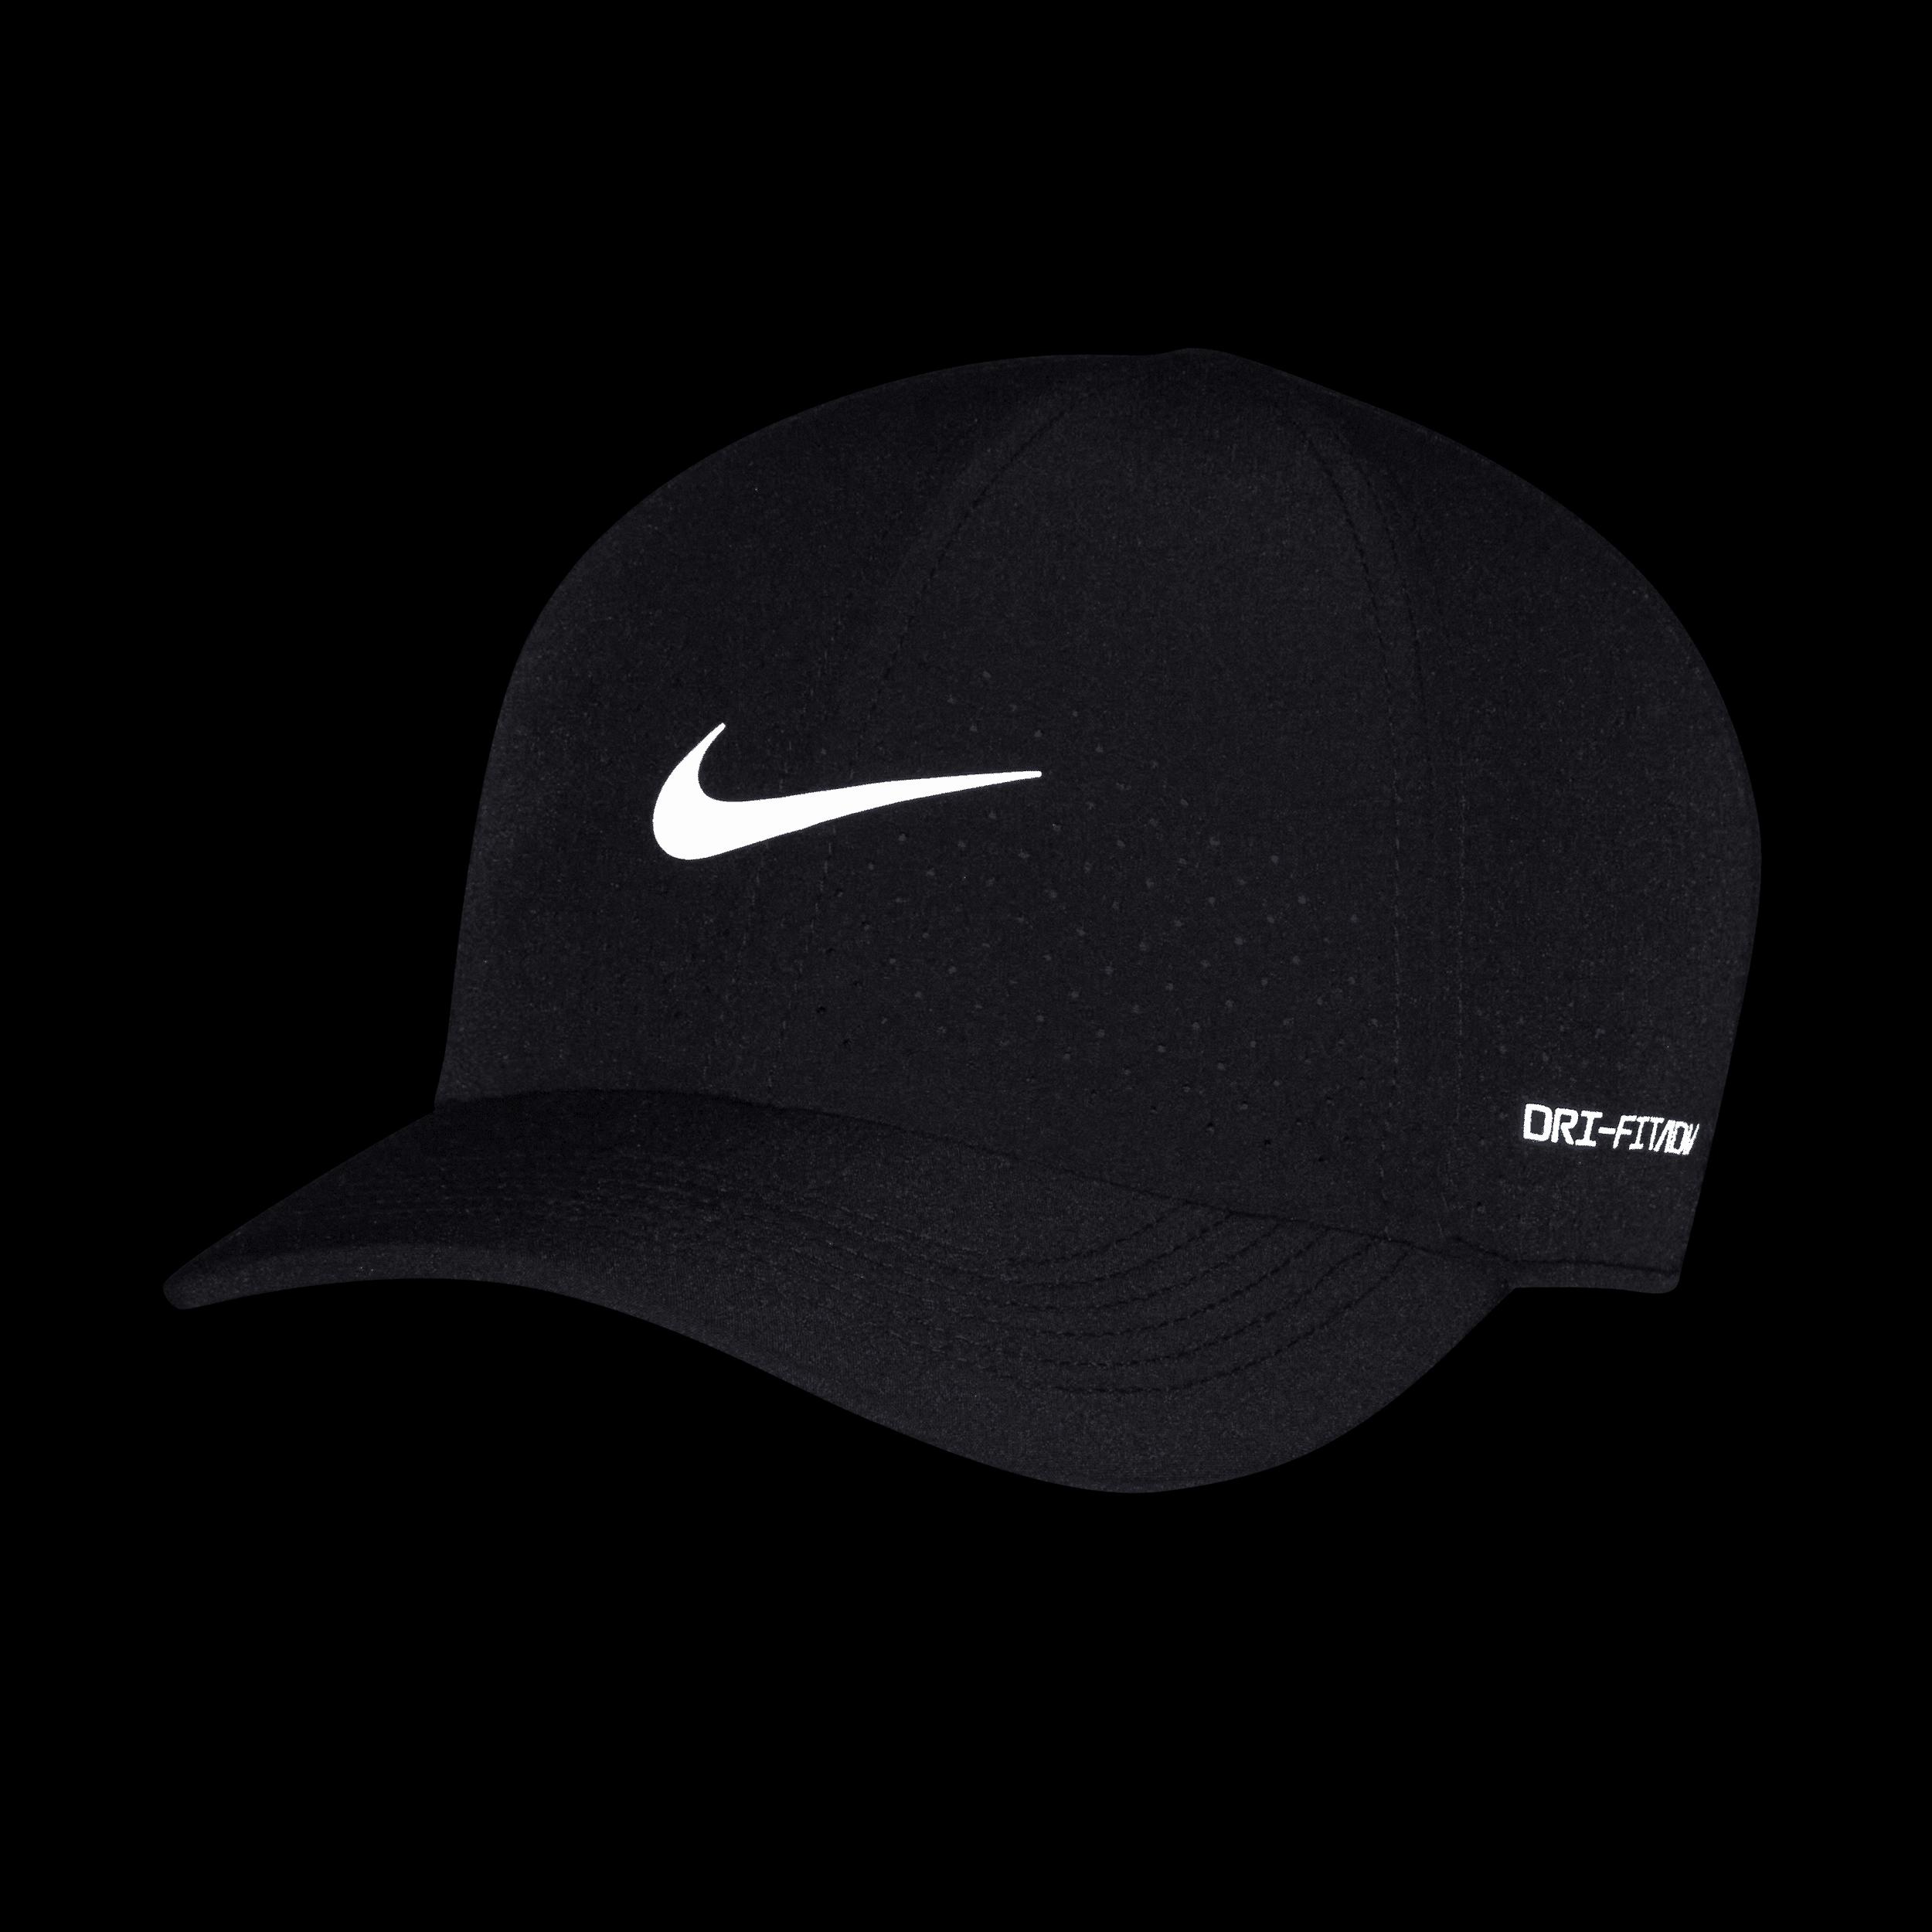 Nike Dri-Fit ADV Club Unstructured Tennis Cap